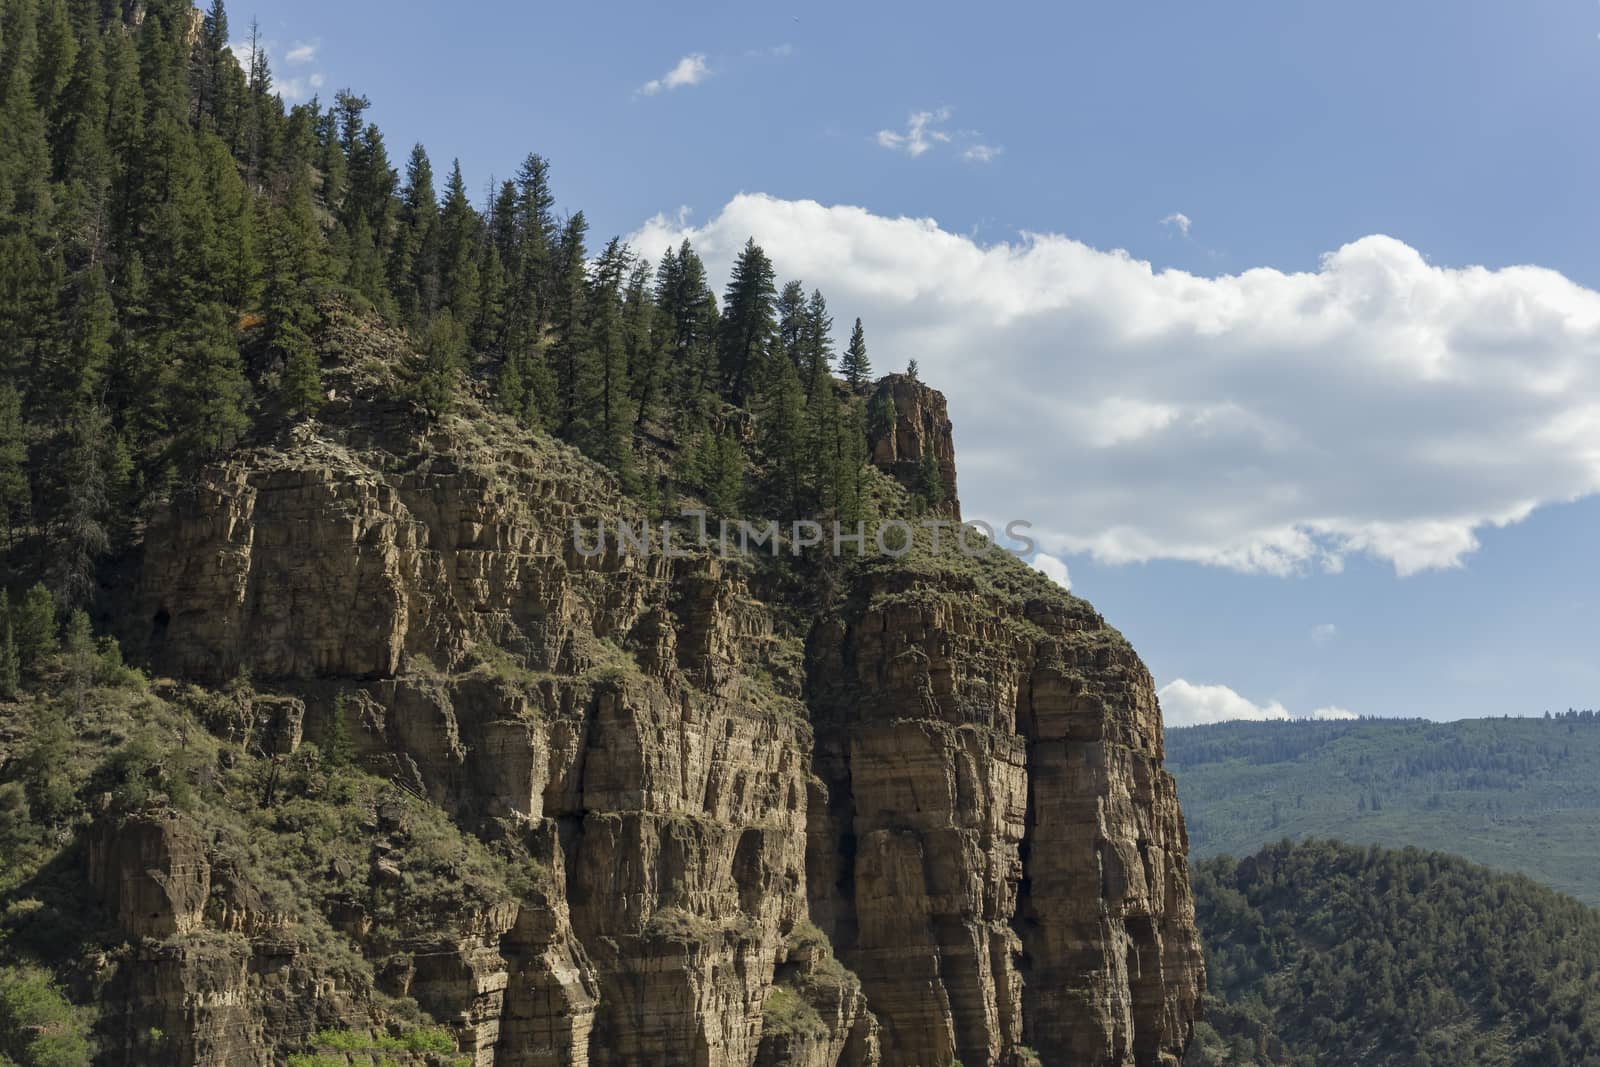 A rocky mountainside in Colorado.